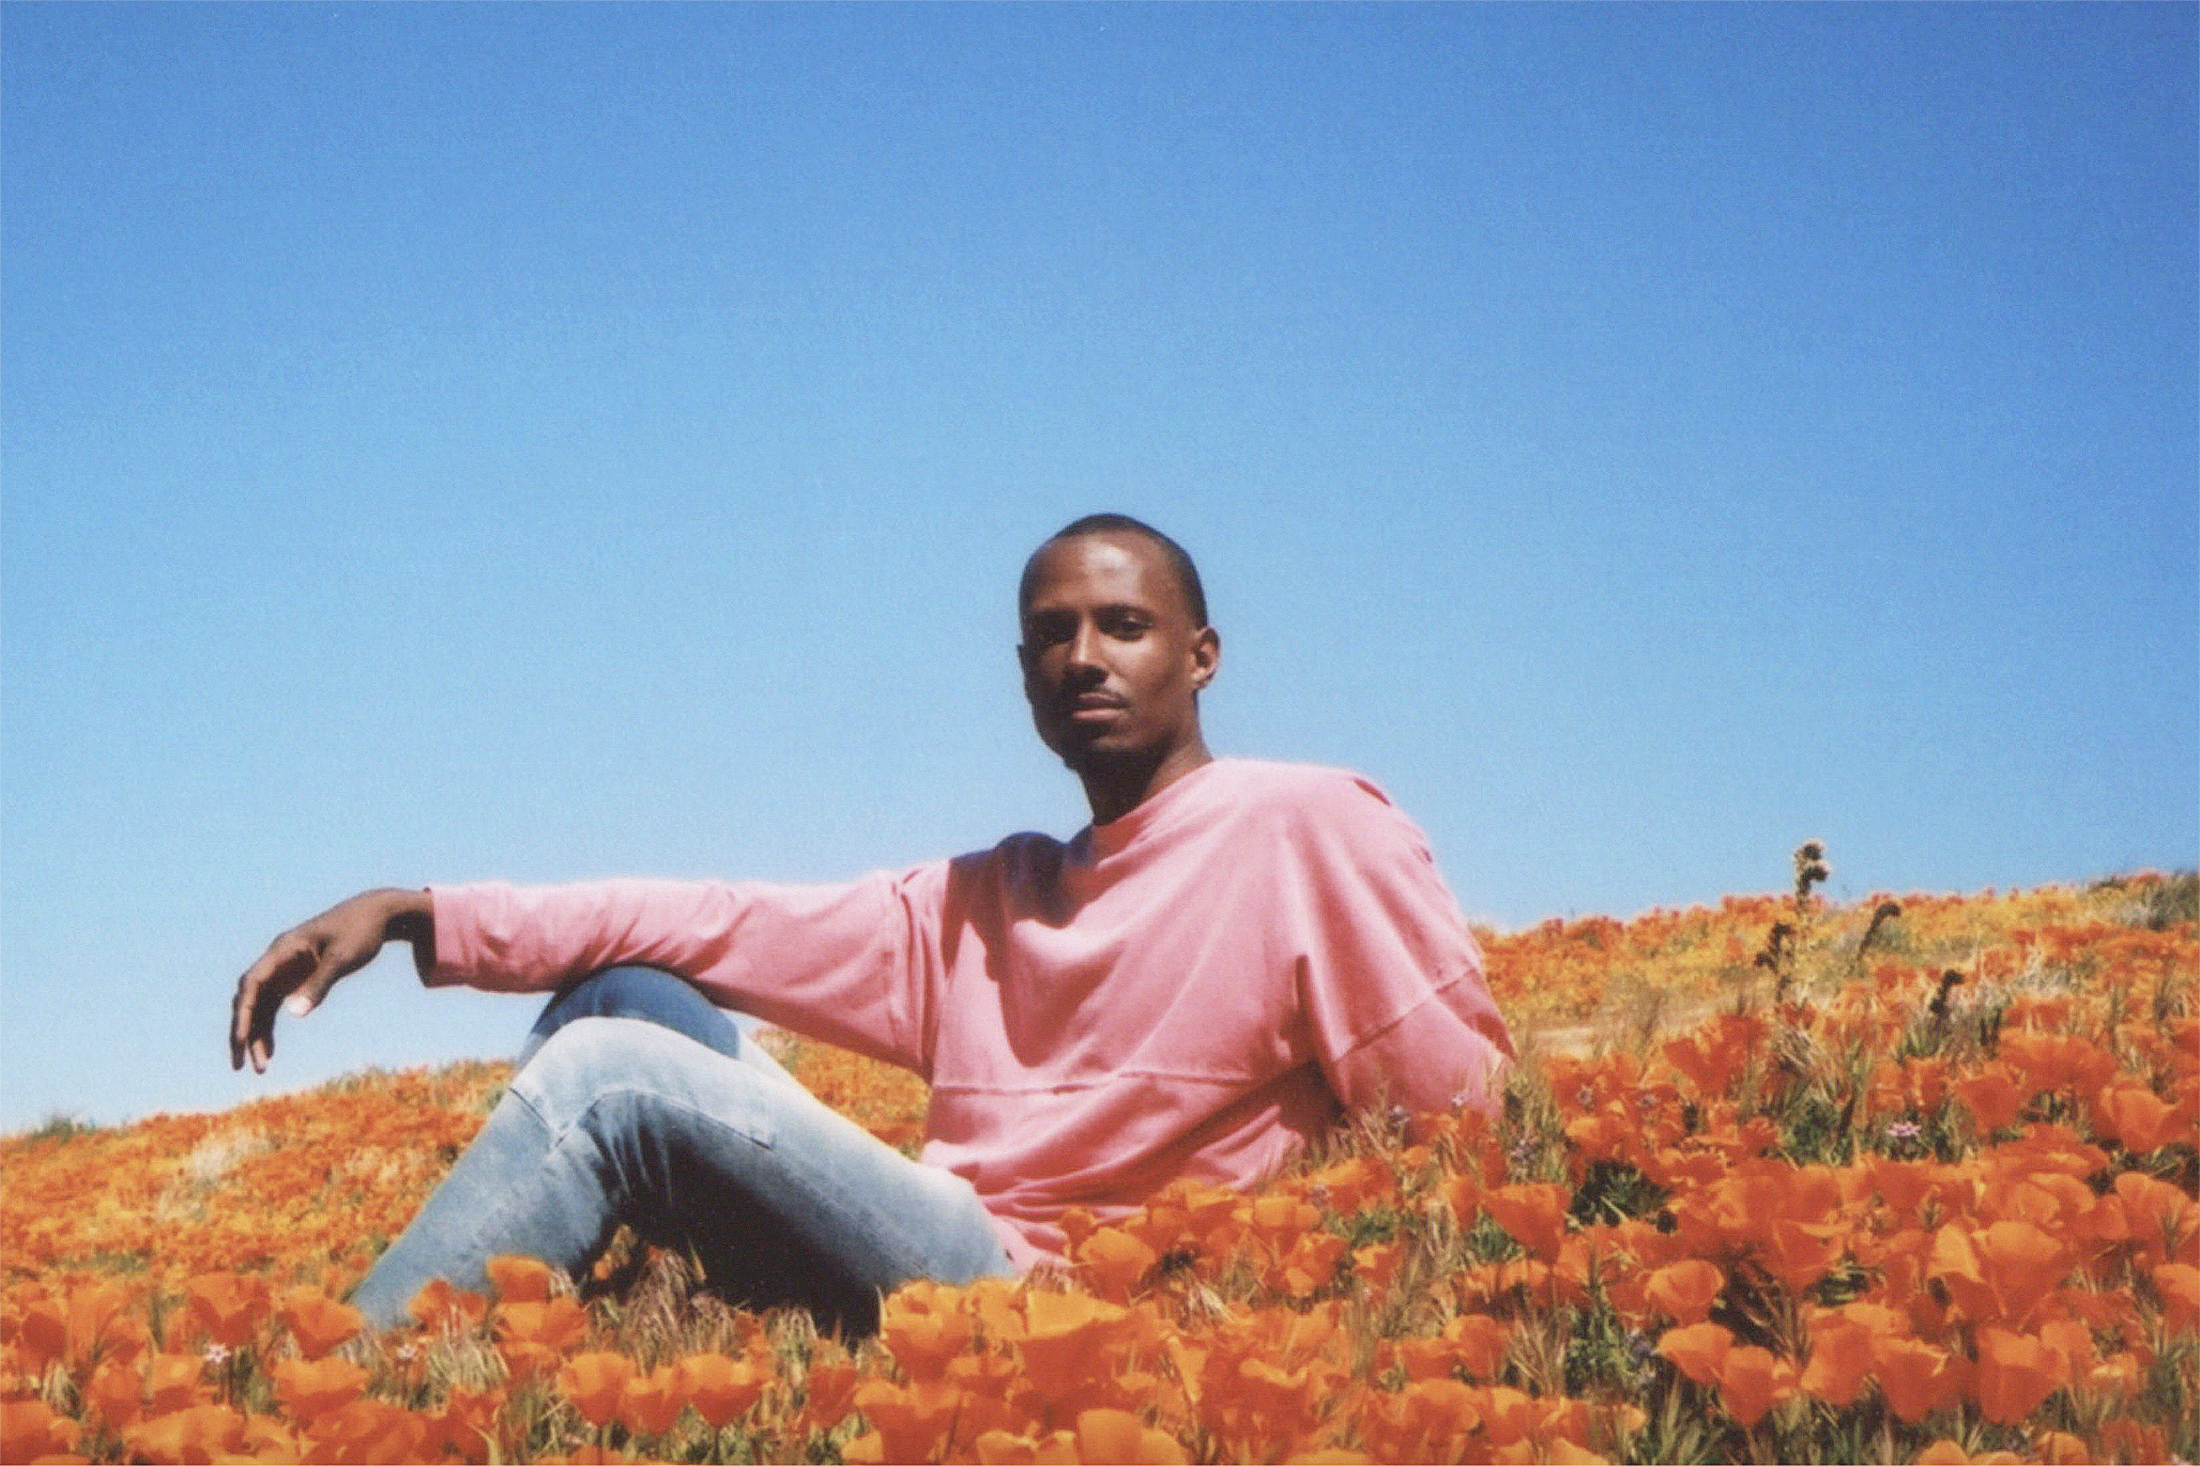 a man sitting in a field of orange flowers